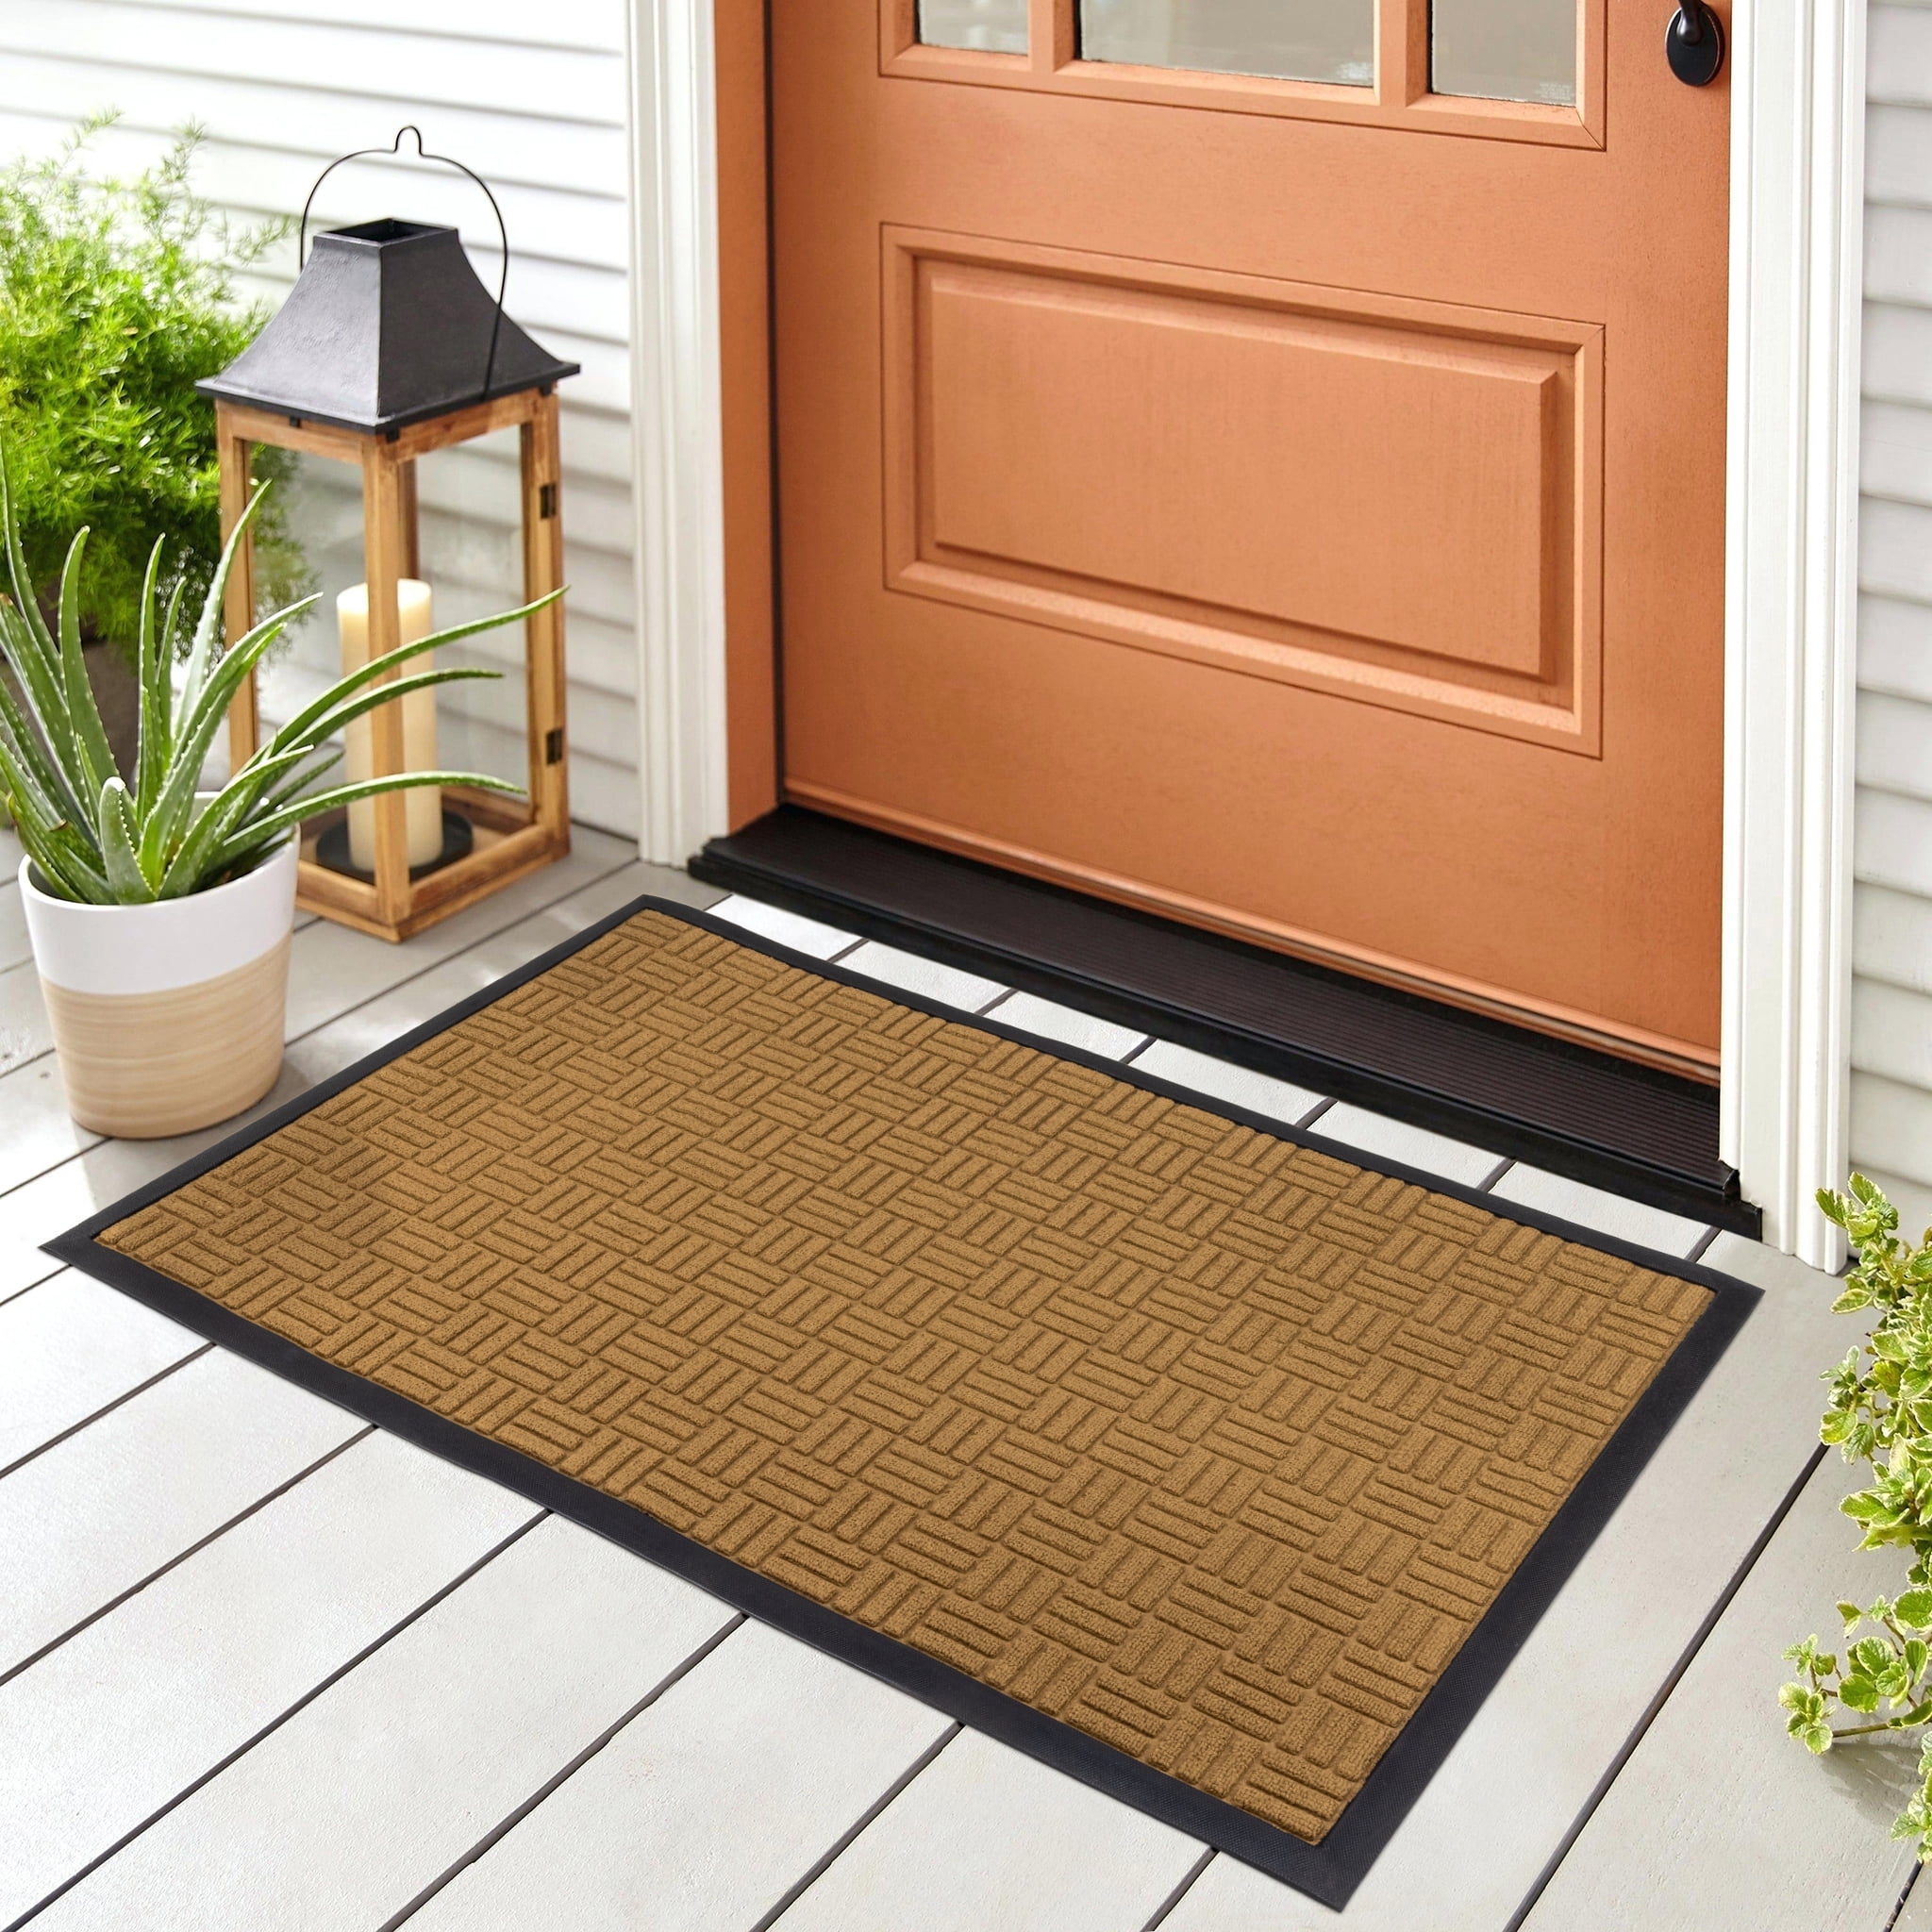 CHICHIC Entrance Door Mat Large 24 x 36 Inch Entry Way Doormat Front Door  Rug Outdoor